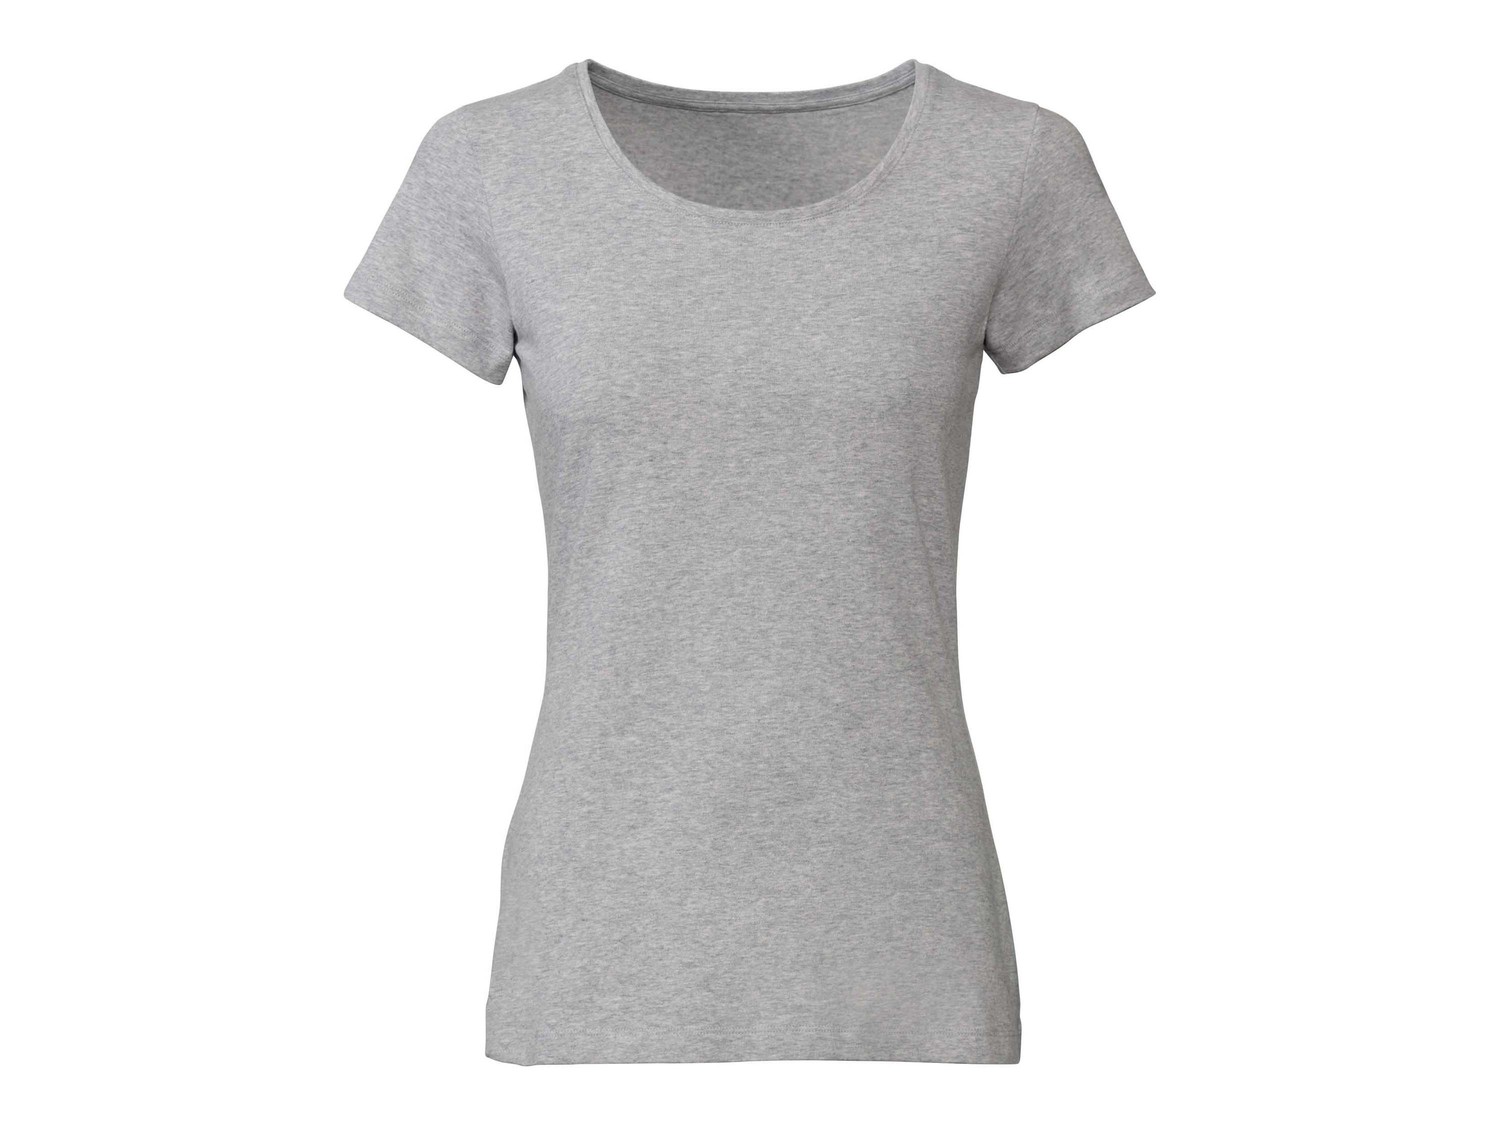 T-shirt da donna, 2 pezzi Esmara, prezzo 8.99 &#8364;  
Misure: S-L
- GOTS